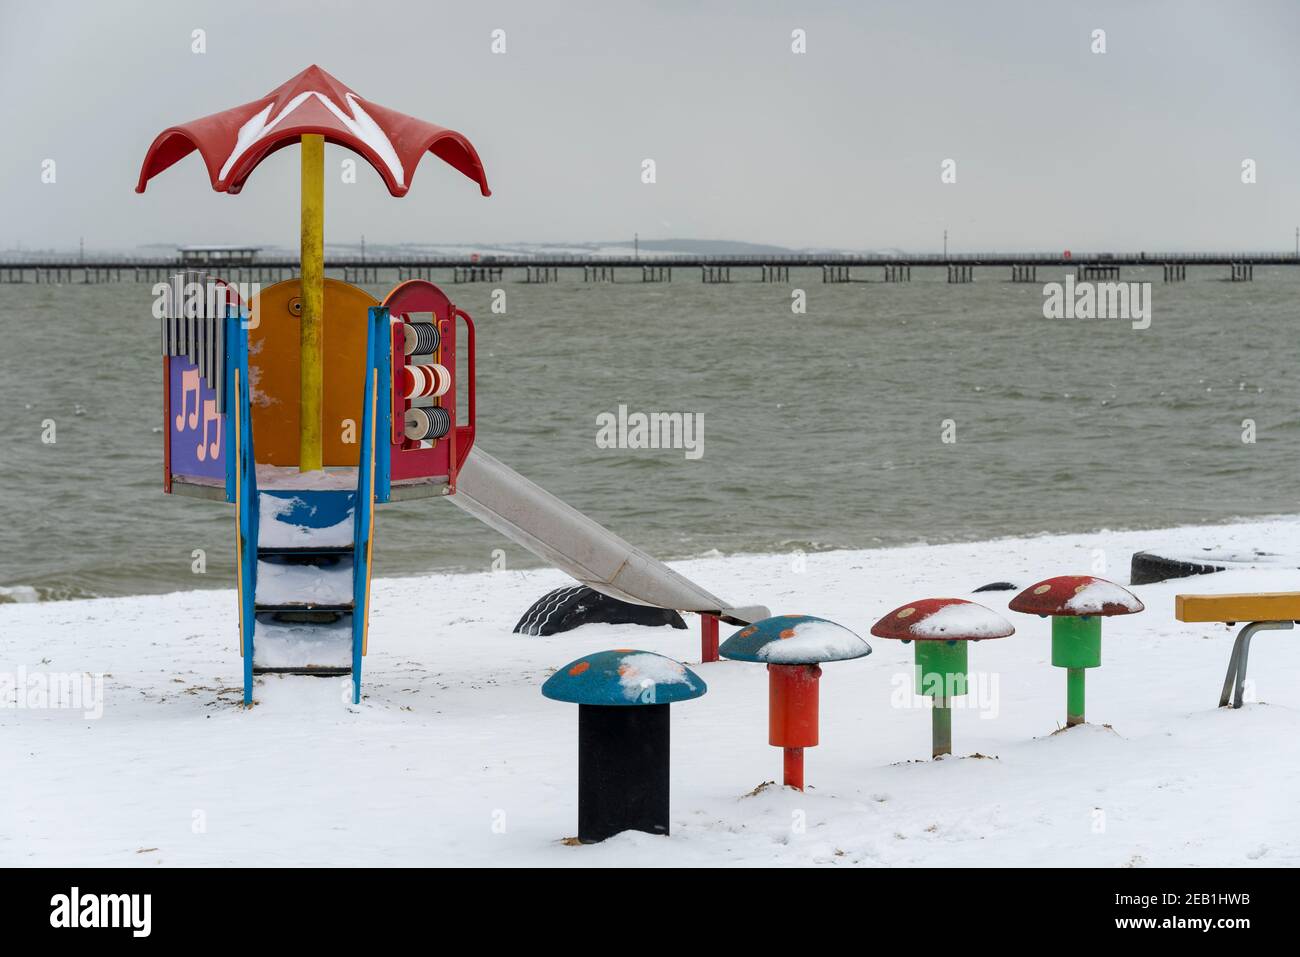 Area giochi in spiaggia a Southend on Sea, Essex, Regno Unito, con neve da Storm Darcy. Spiaggia innevata. Seggiolini per bambini Foto Stock